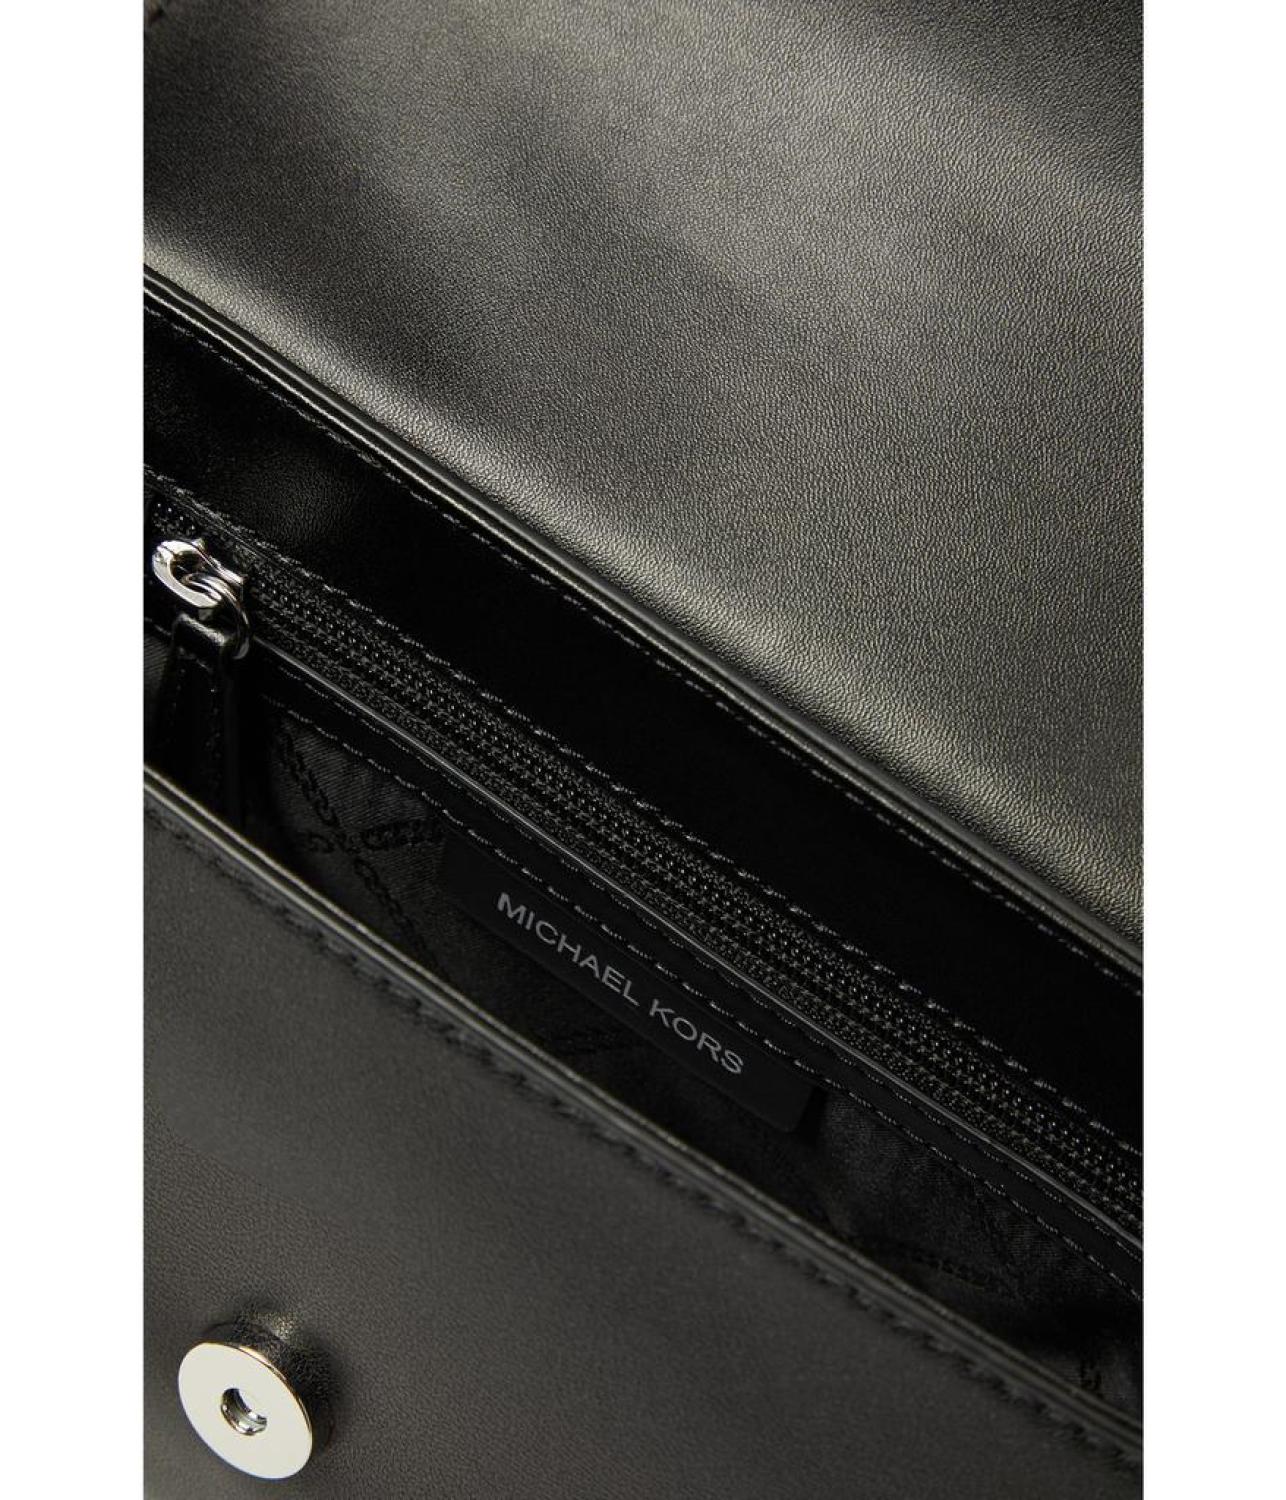 Michael Kors Parker XL Convertible Chain Shoulder Bag - Black